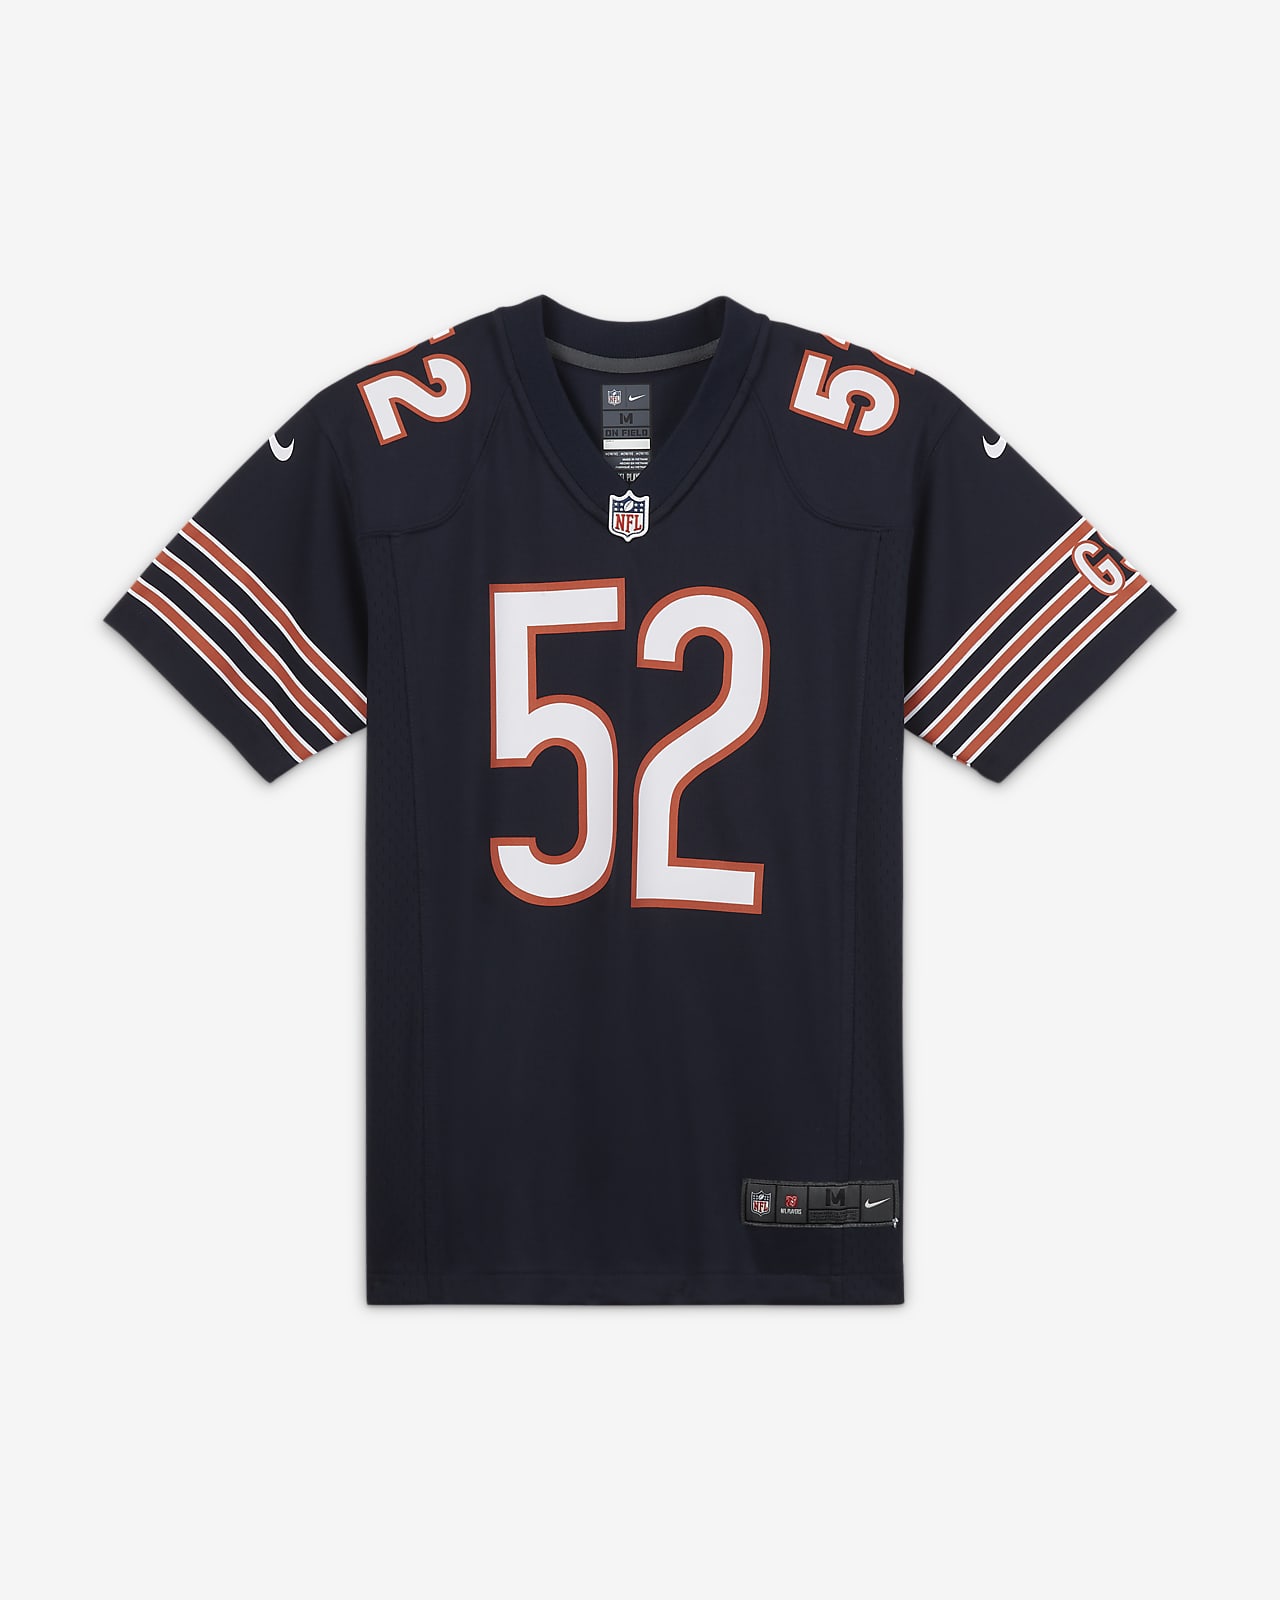 NFL Chicago Bears (Khalil Mack) Camiseta de fútbol americano del partido - Niño/a